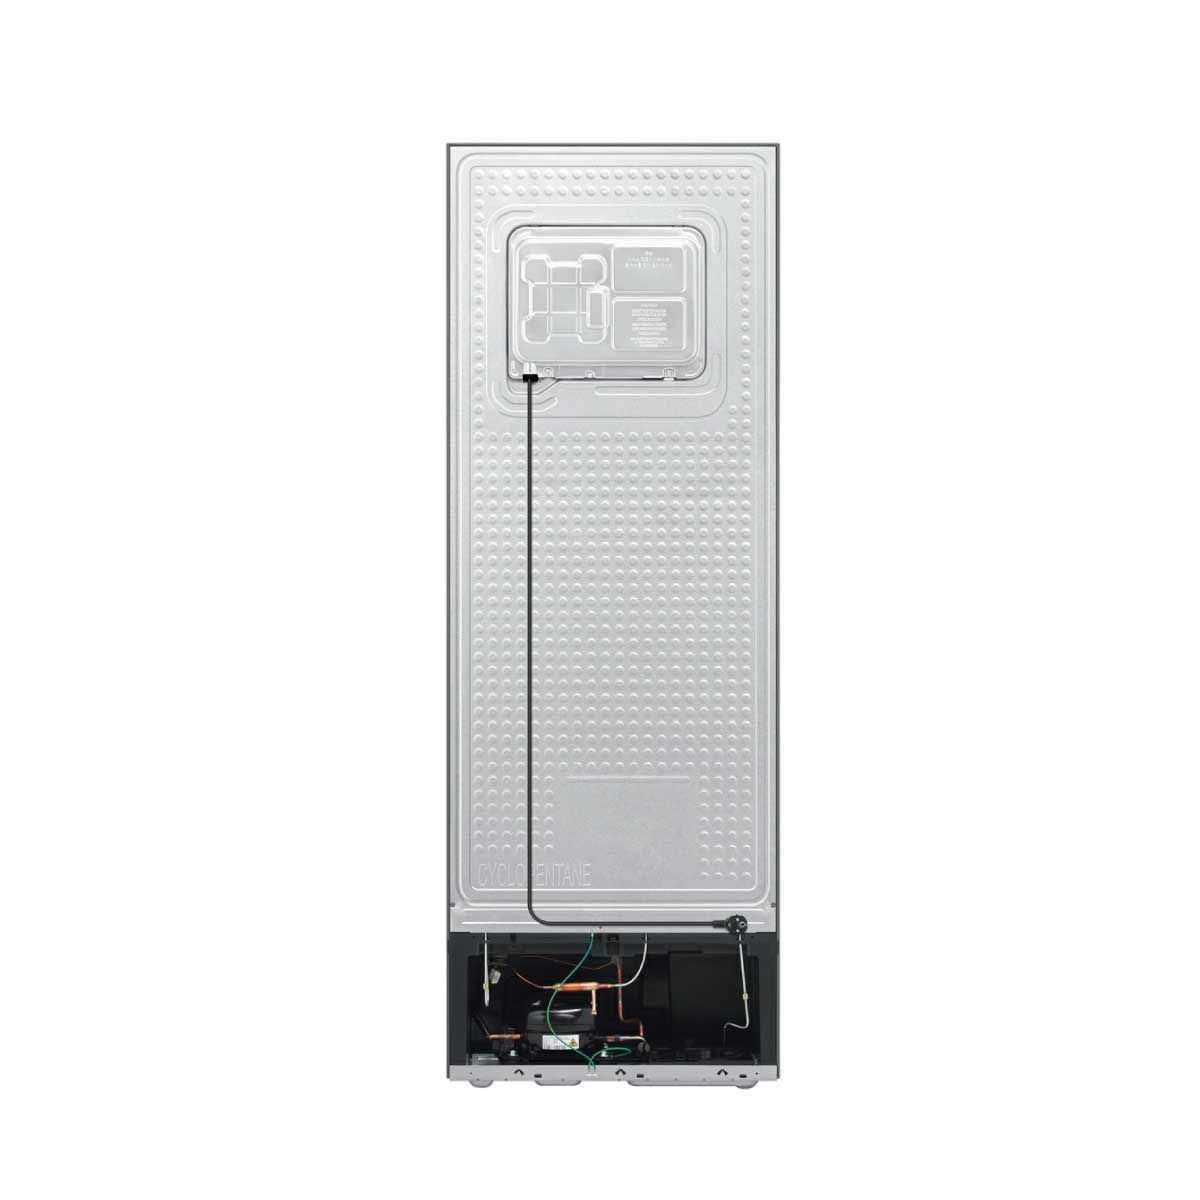 SAMSUNG ตู้เย็น 2 ประตู 10.8Q สีเทา รุ่น RT31CG5020S9ST